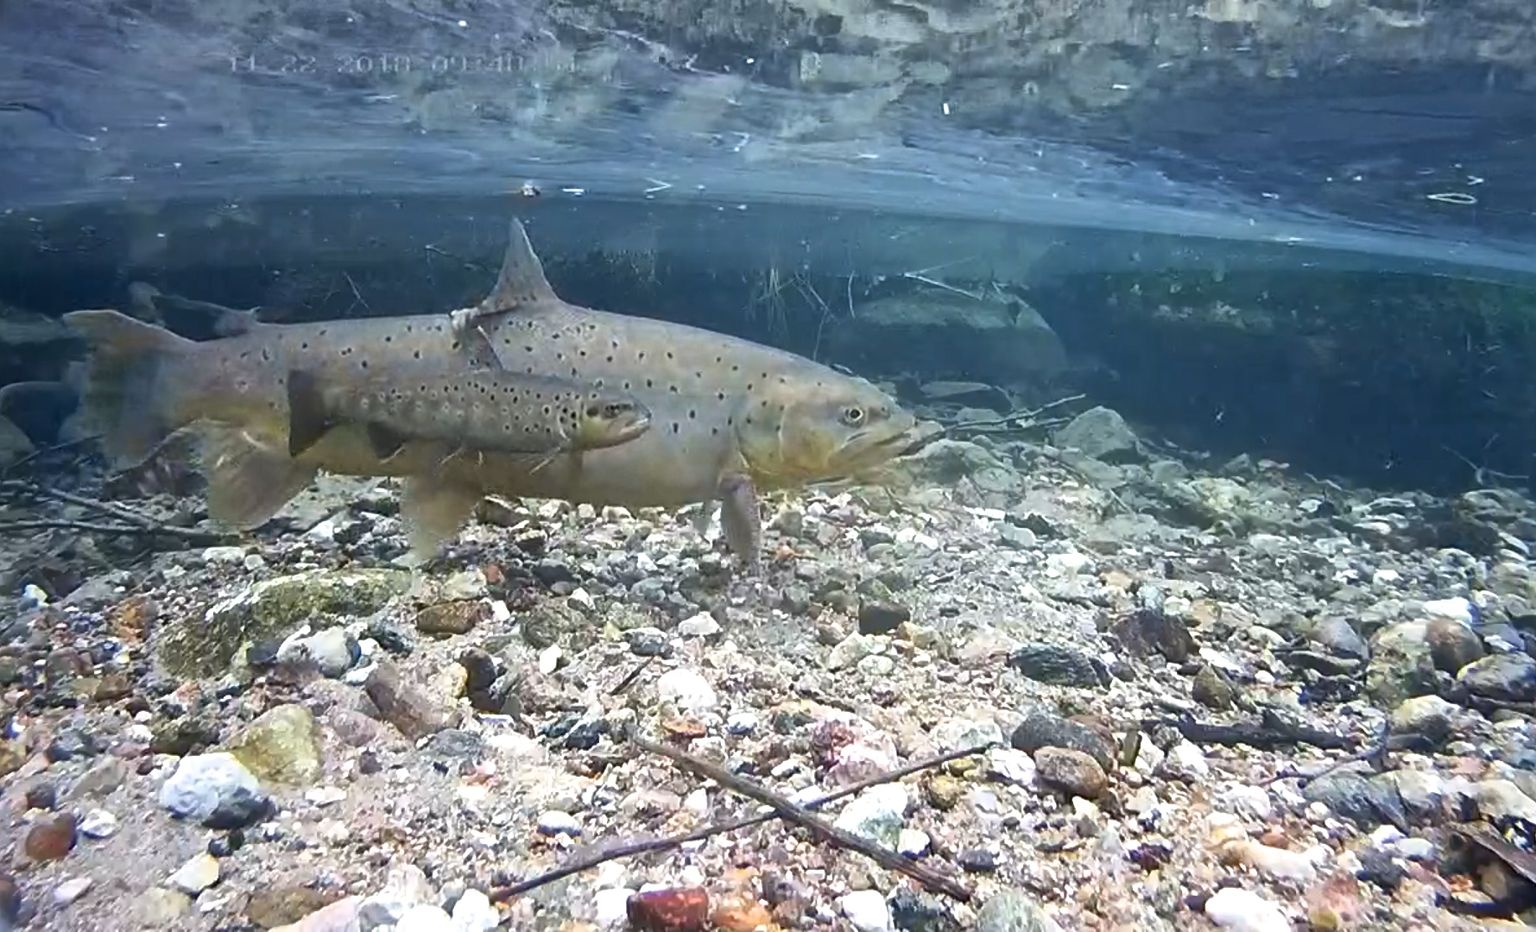 Jõeforellikaamera abil saab reaalajas jälgida nende põnevate kalade elu.